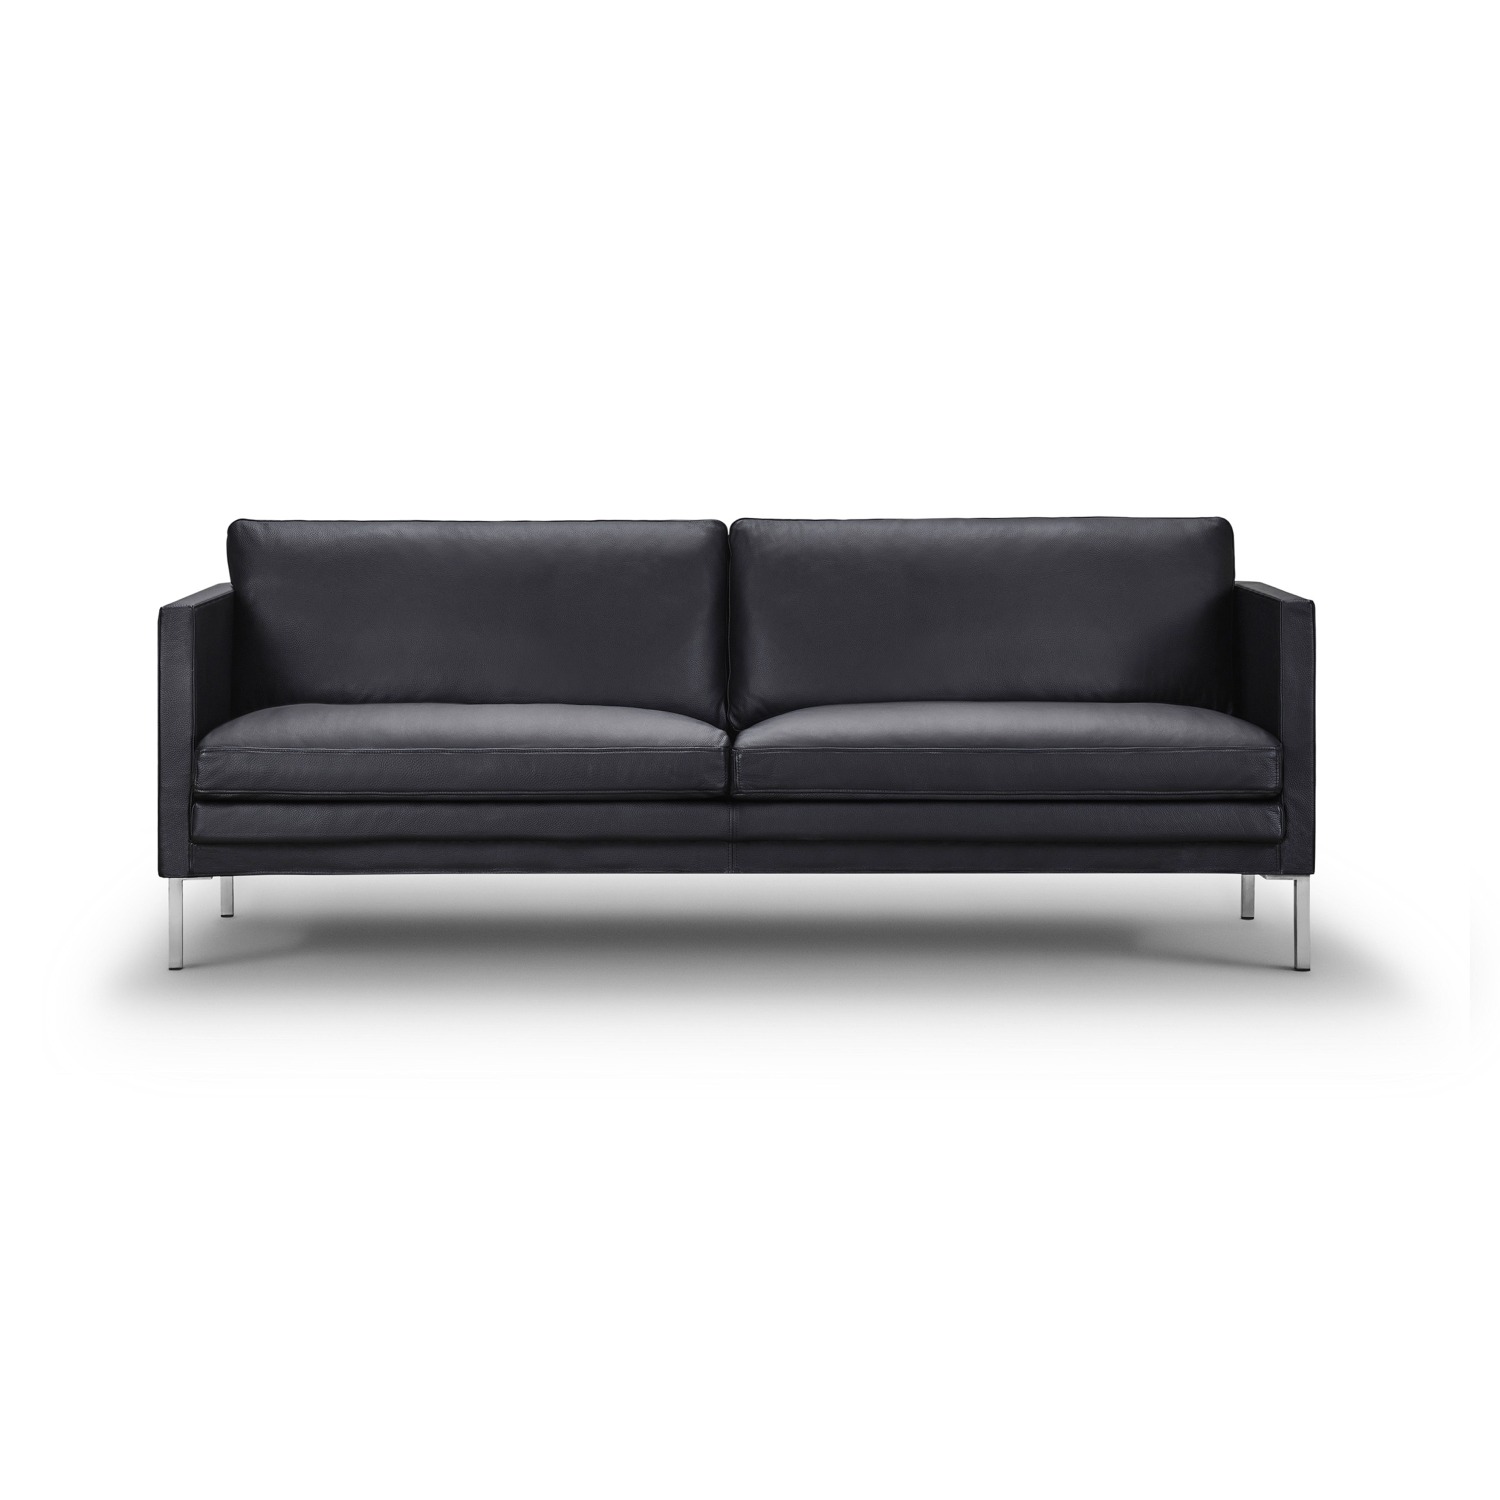 Omsorg modstand fordomme JU 953 sofa - Køb online | Olsson Møbler